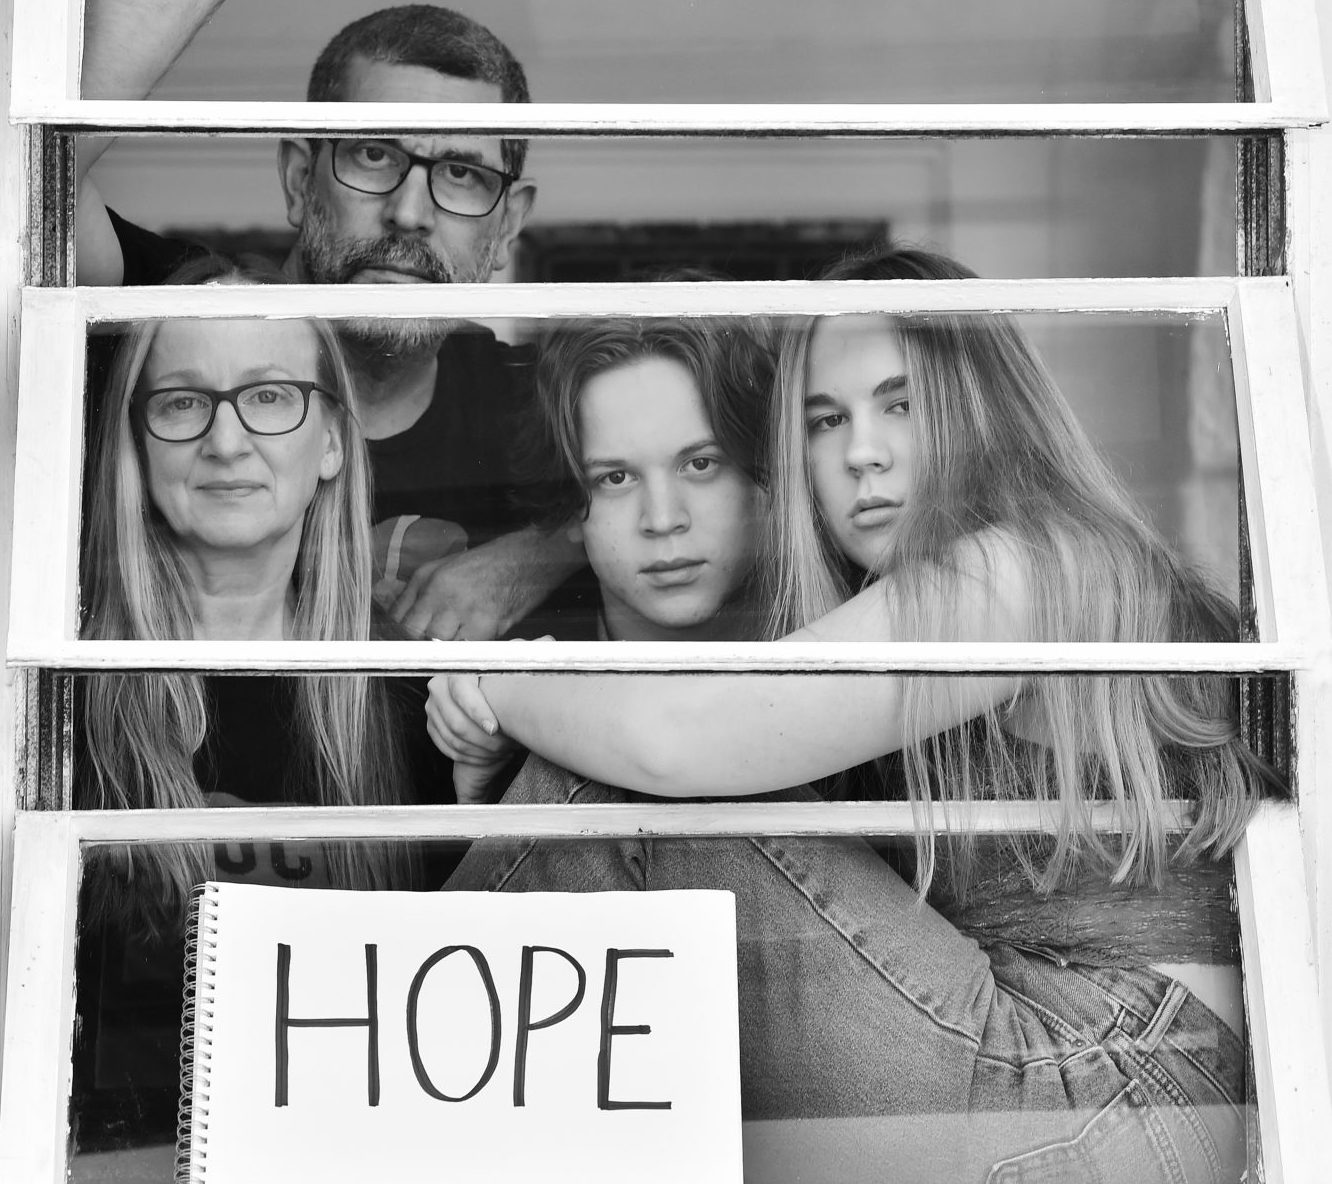 Messaggi di speranza alla finestra. Il fotografo Stephen Lovekin dà voce a chi è isolato in casa